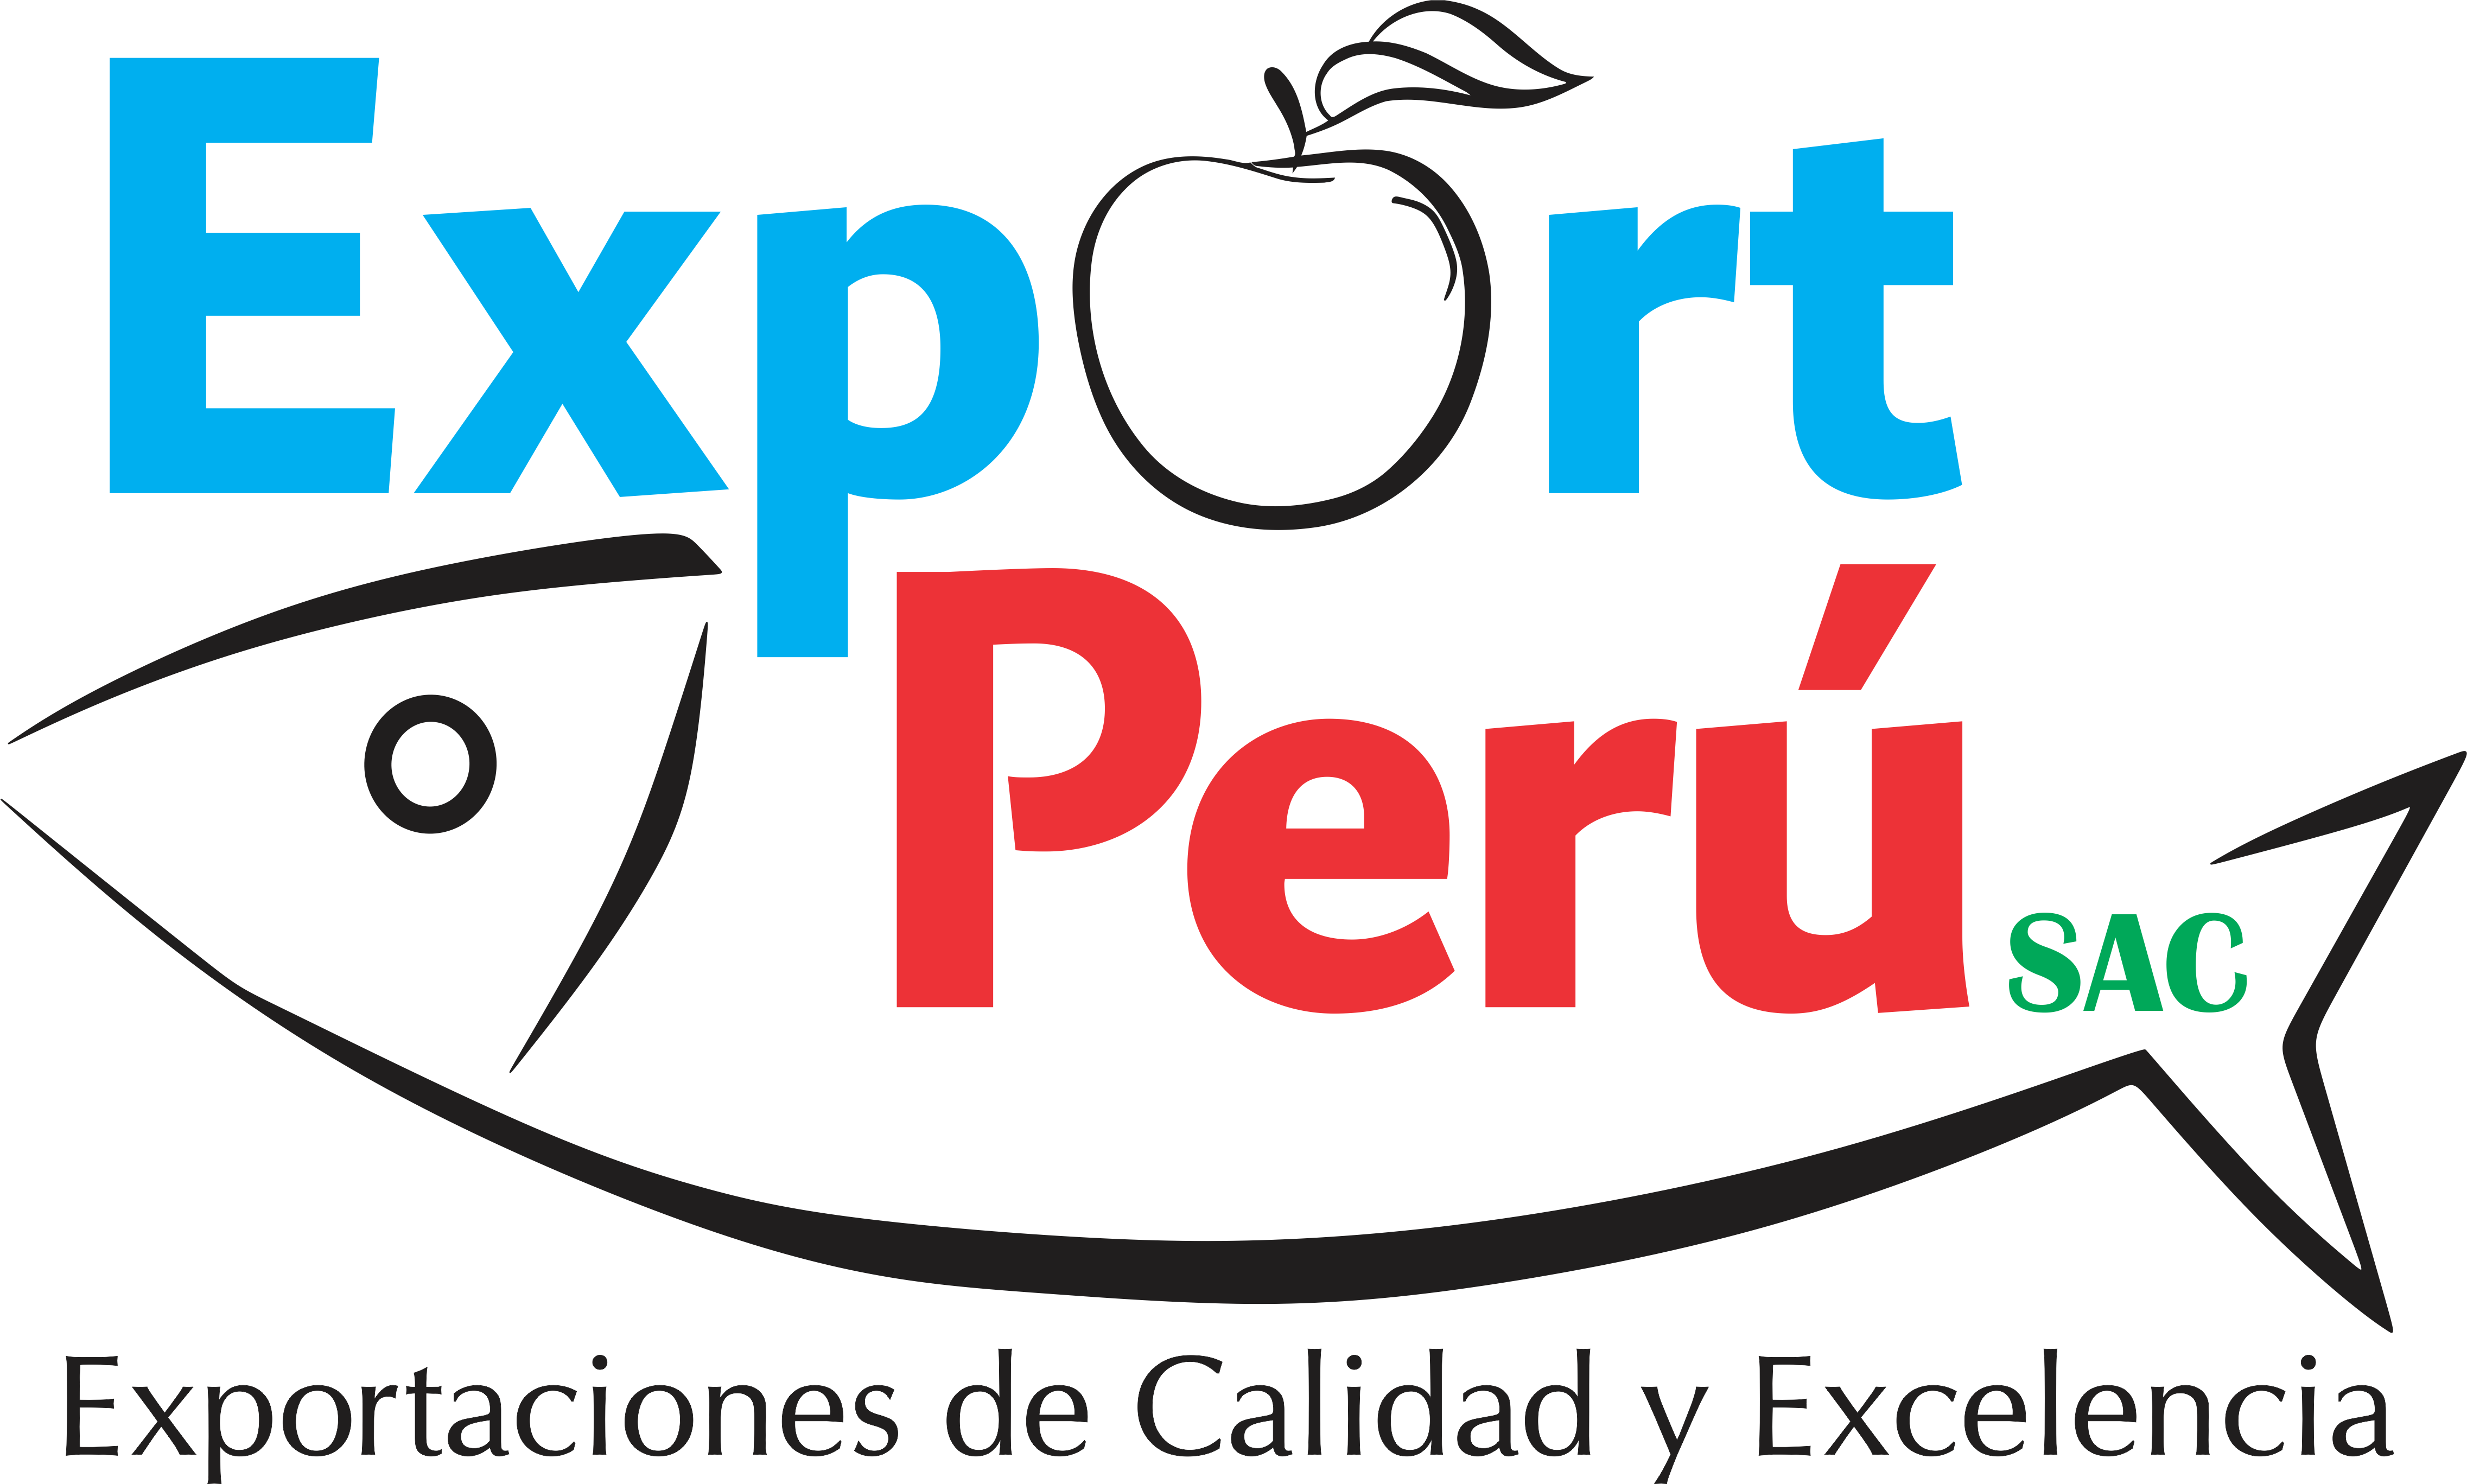 Product Export Peru S A C - Export Peru Sac (4546x2735)